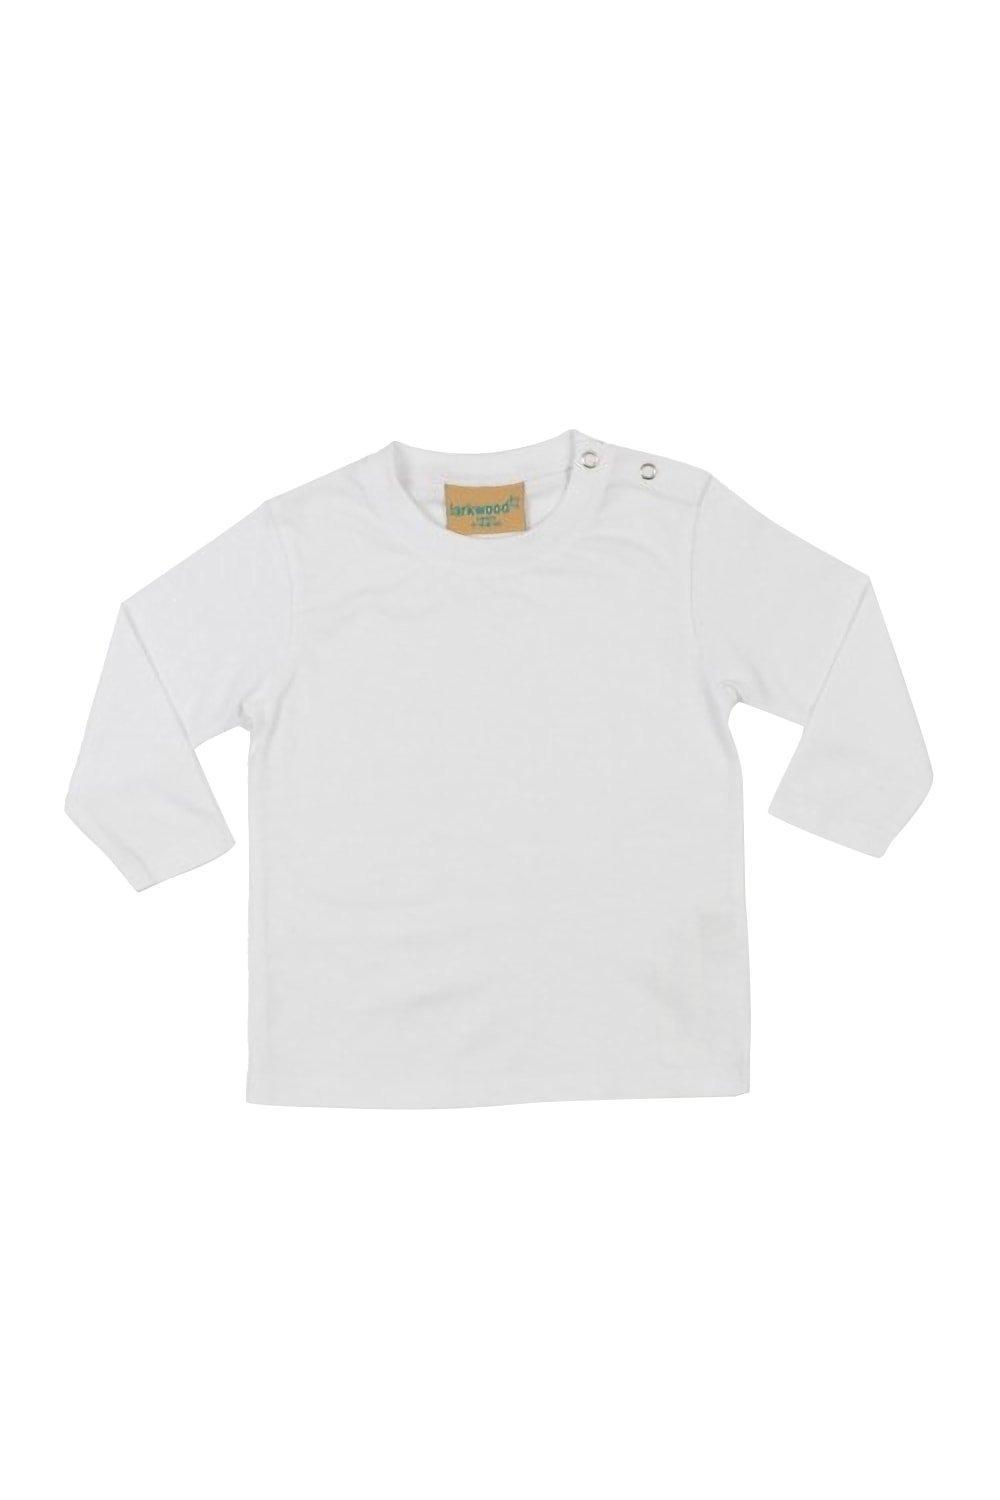 Простая футболка с длинным рукавом Larkwood, белый полосатая футболка с коротким рукавом larkwood белый